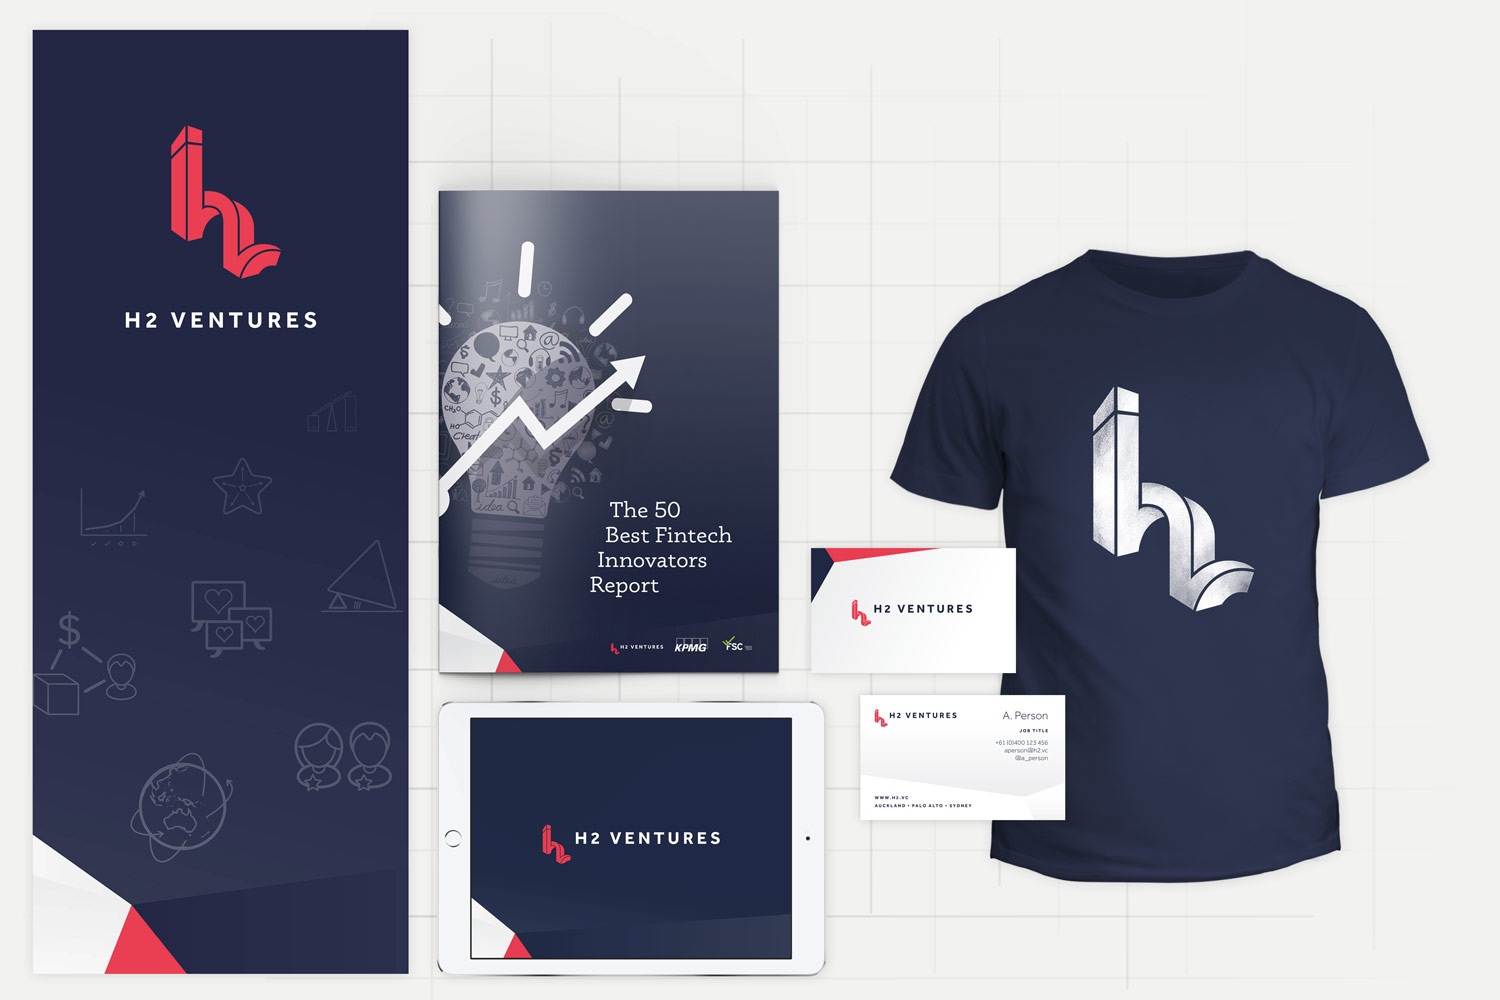 H2 Ventures Brand Design - design by Theysaurus